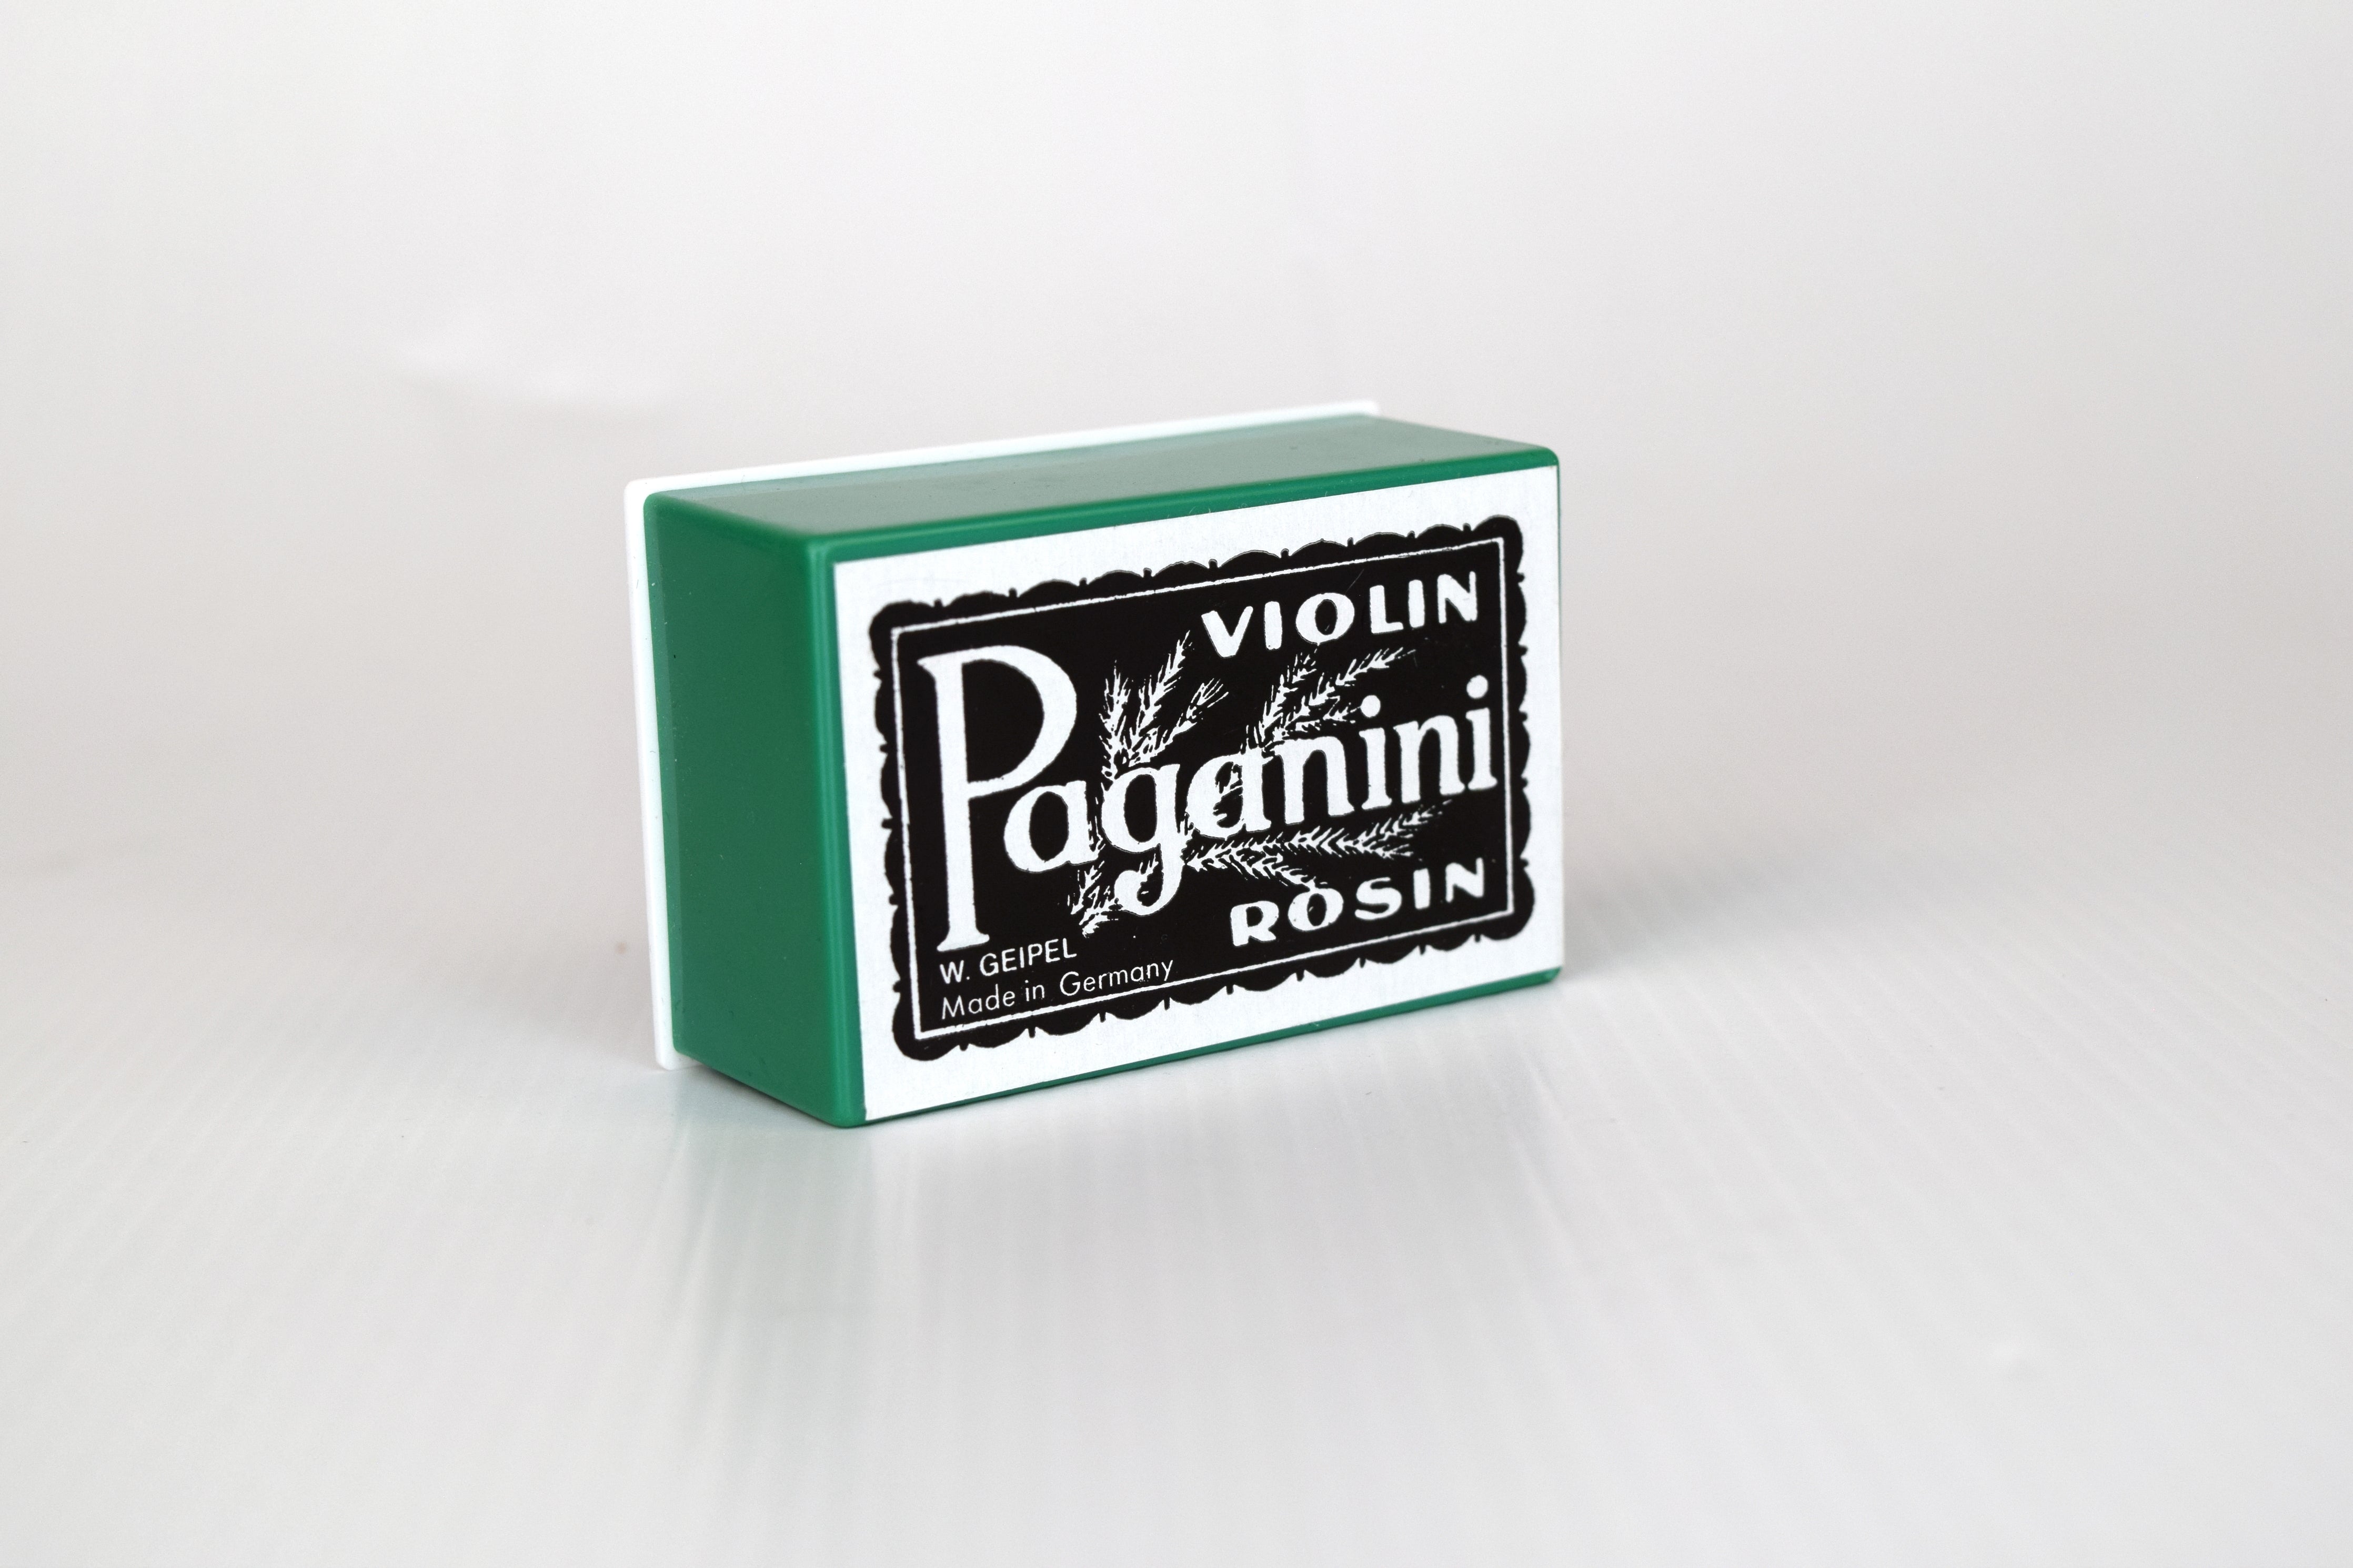 Paganini Violin Rosin with Cloth Cover